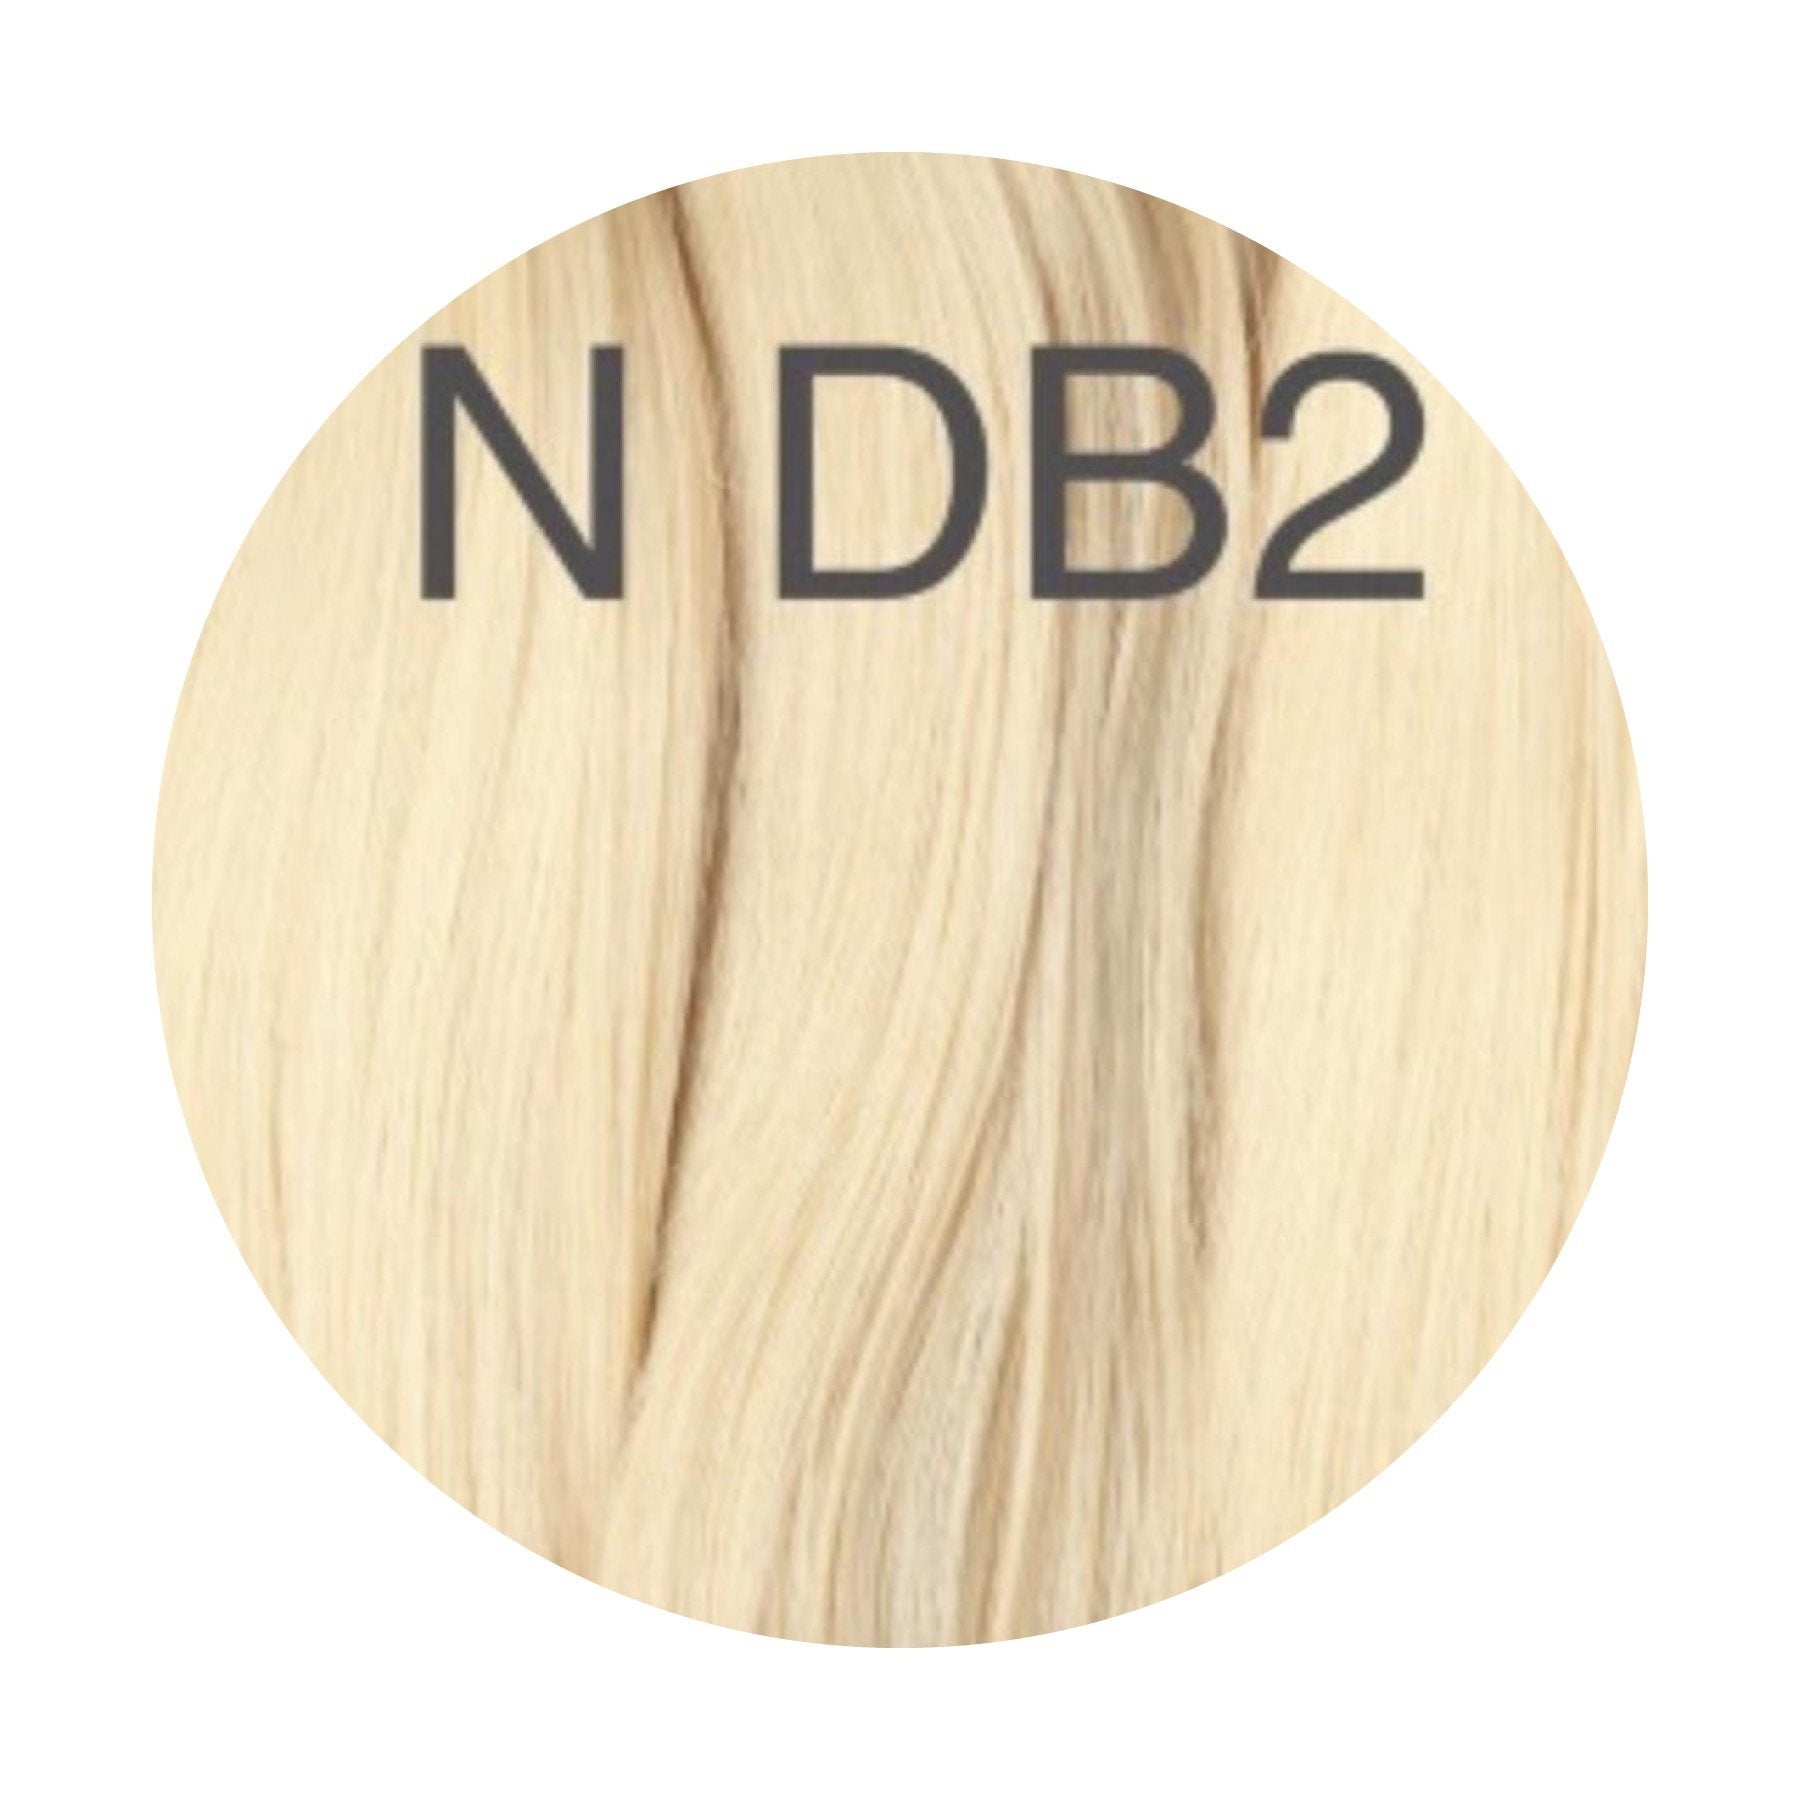 Micro links Color DB2 GVA hair_Retail price - GVA hair